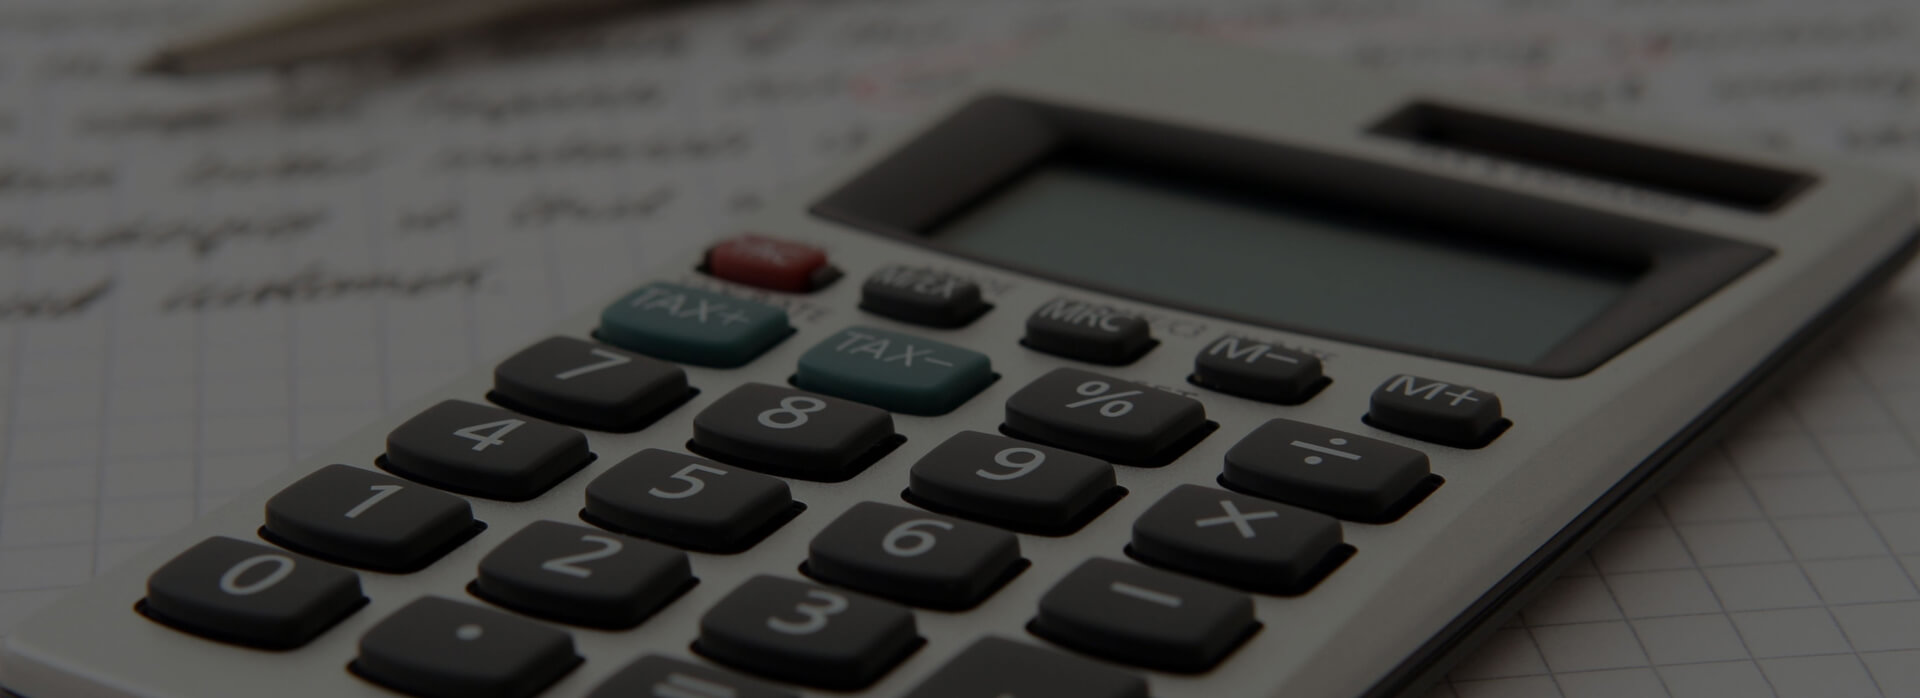 Hr Tax Refund Calculator